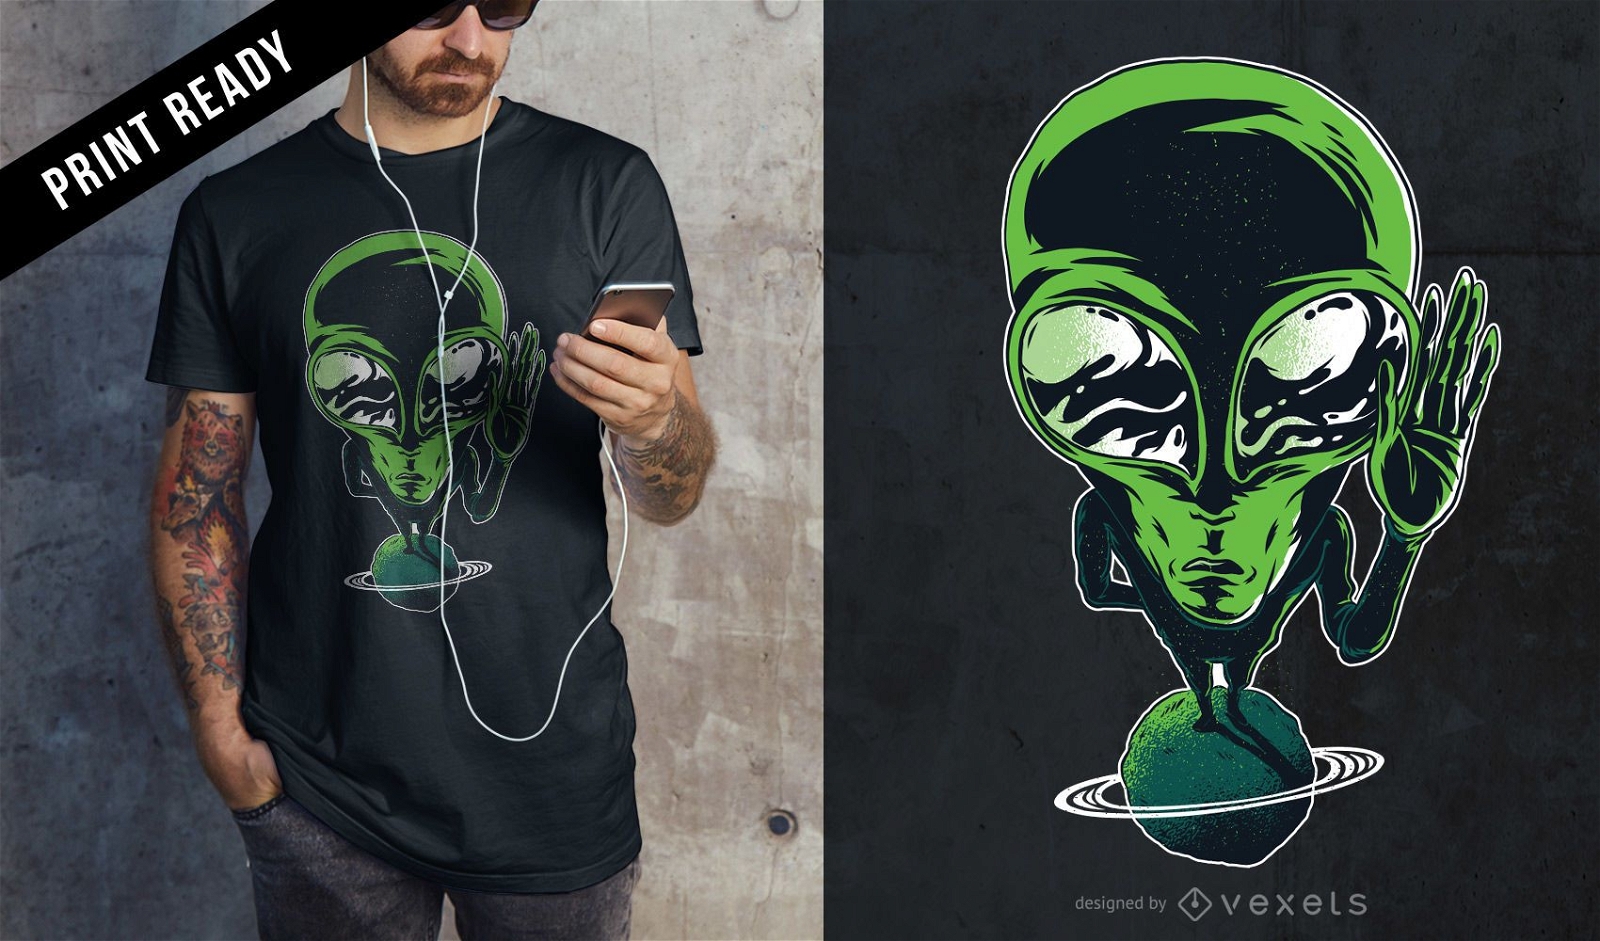 Dise?o de camiseta alien?gena en el planeta.